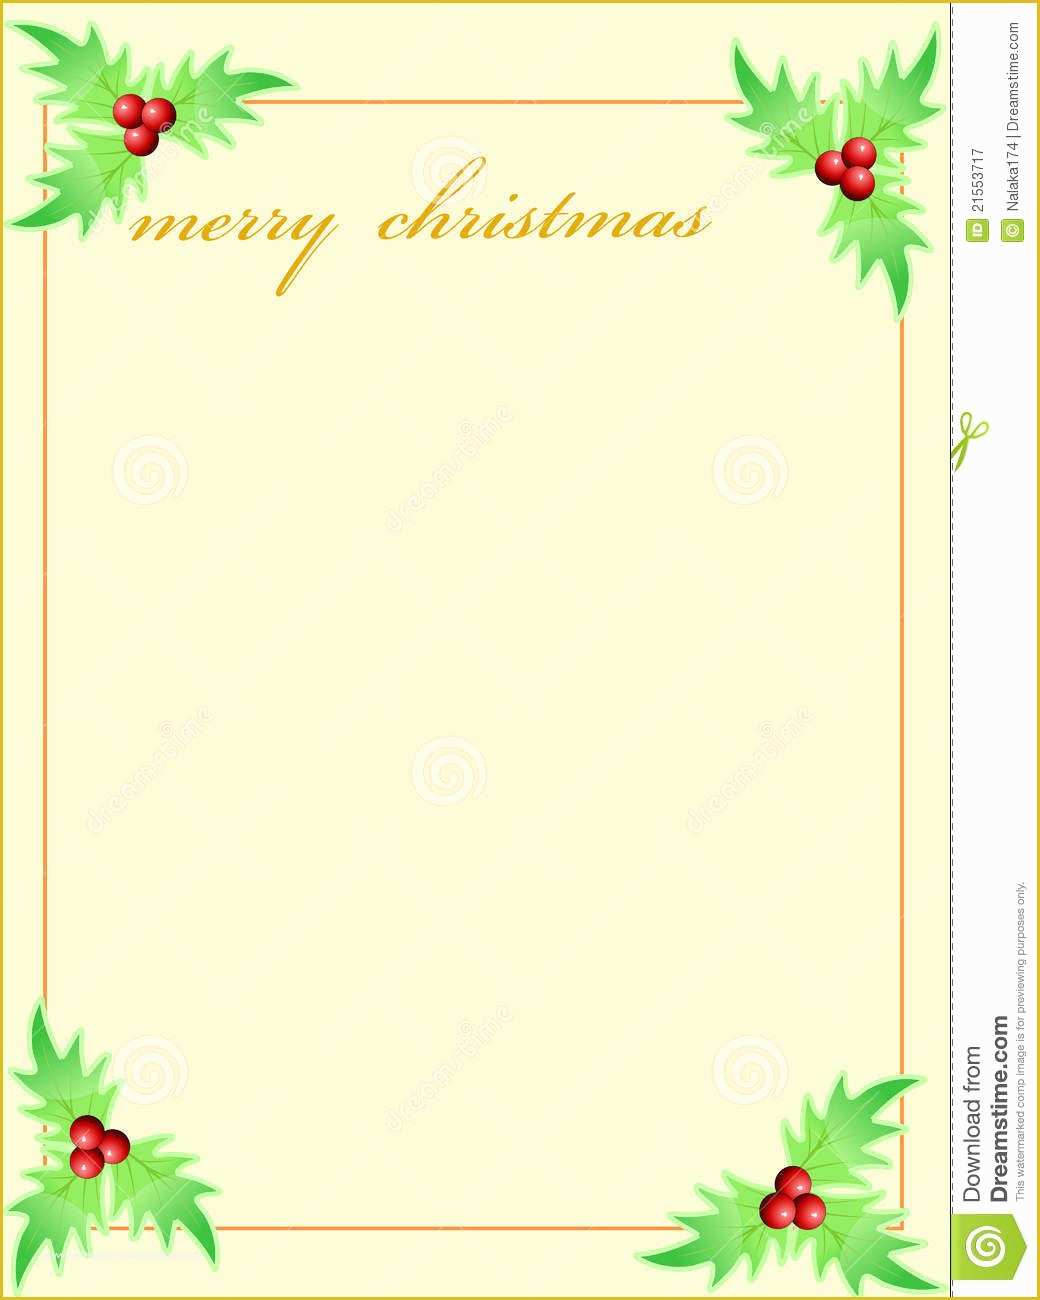 Free Printable Christmas Card Templates Of 16 Holiday Greeting Card Template Free Christmas